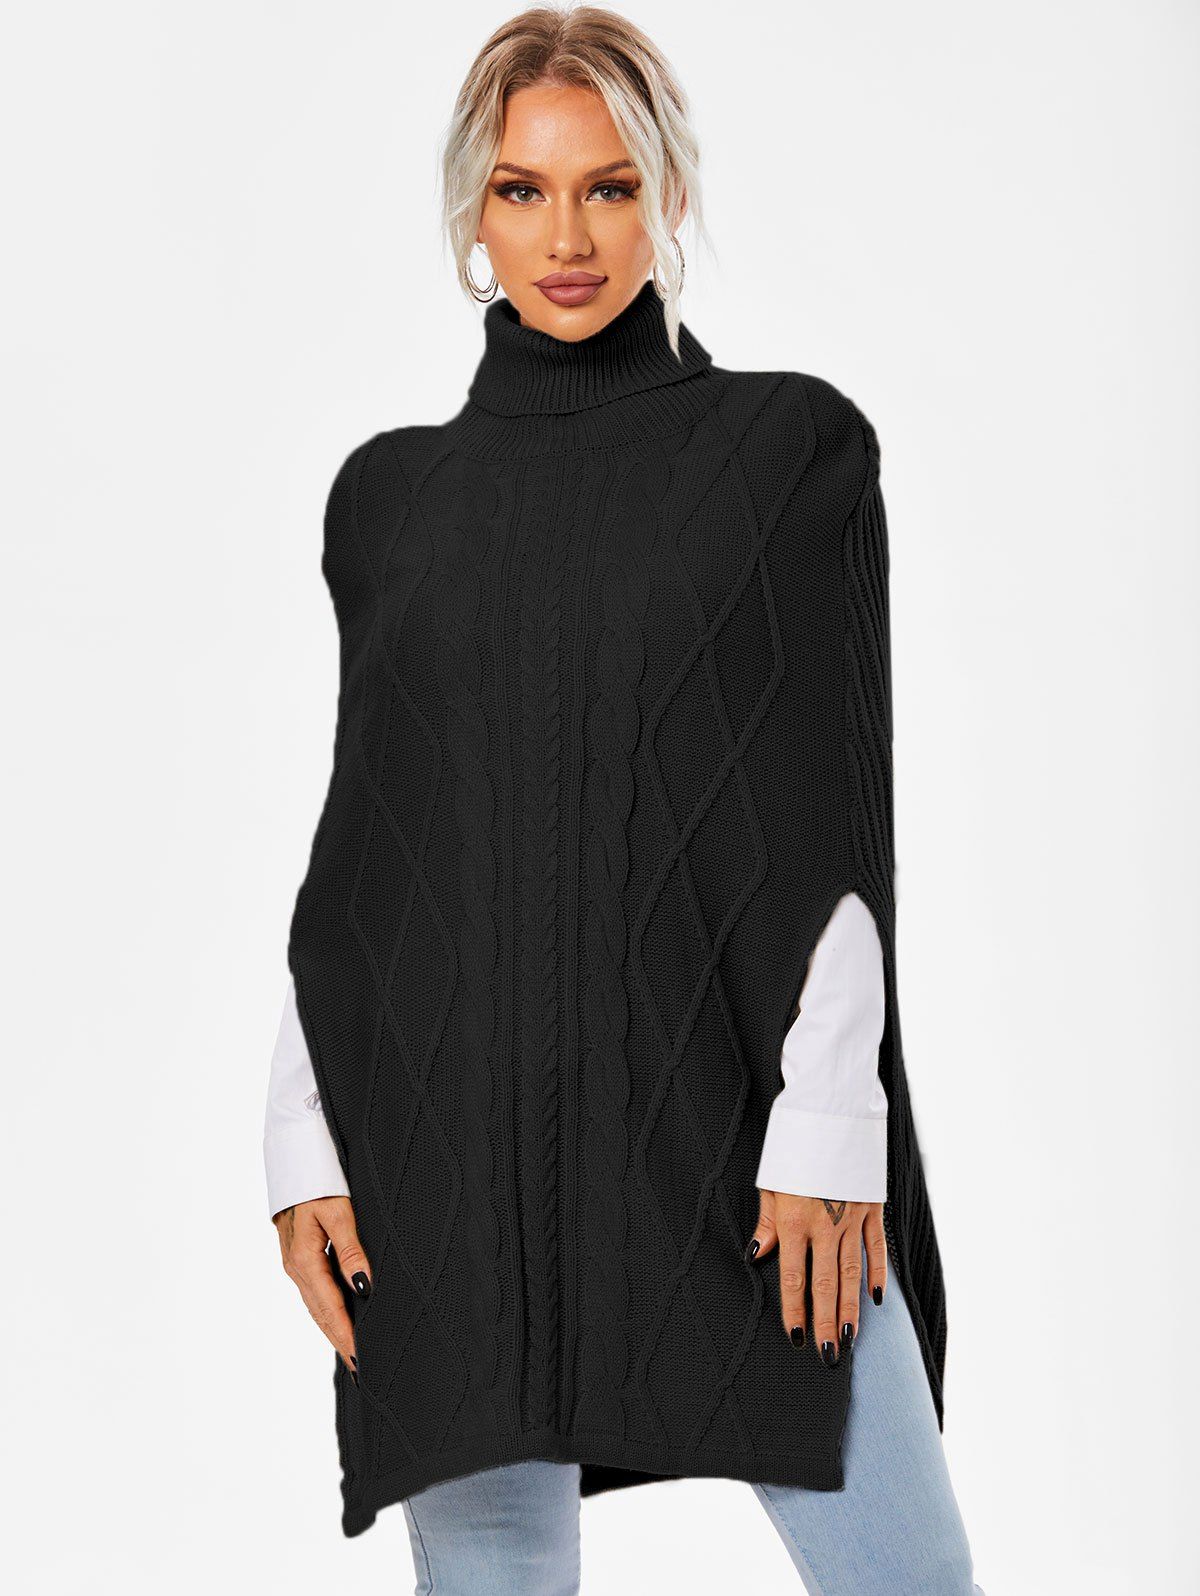 Turtleneck Side Slit Cape Sweater - BLACK XL